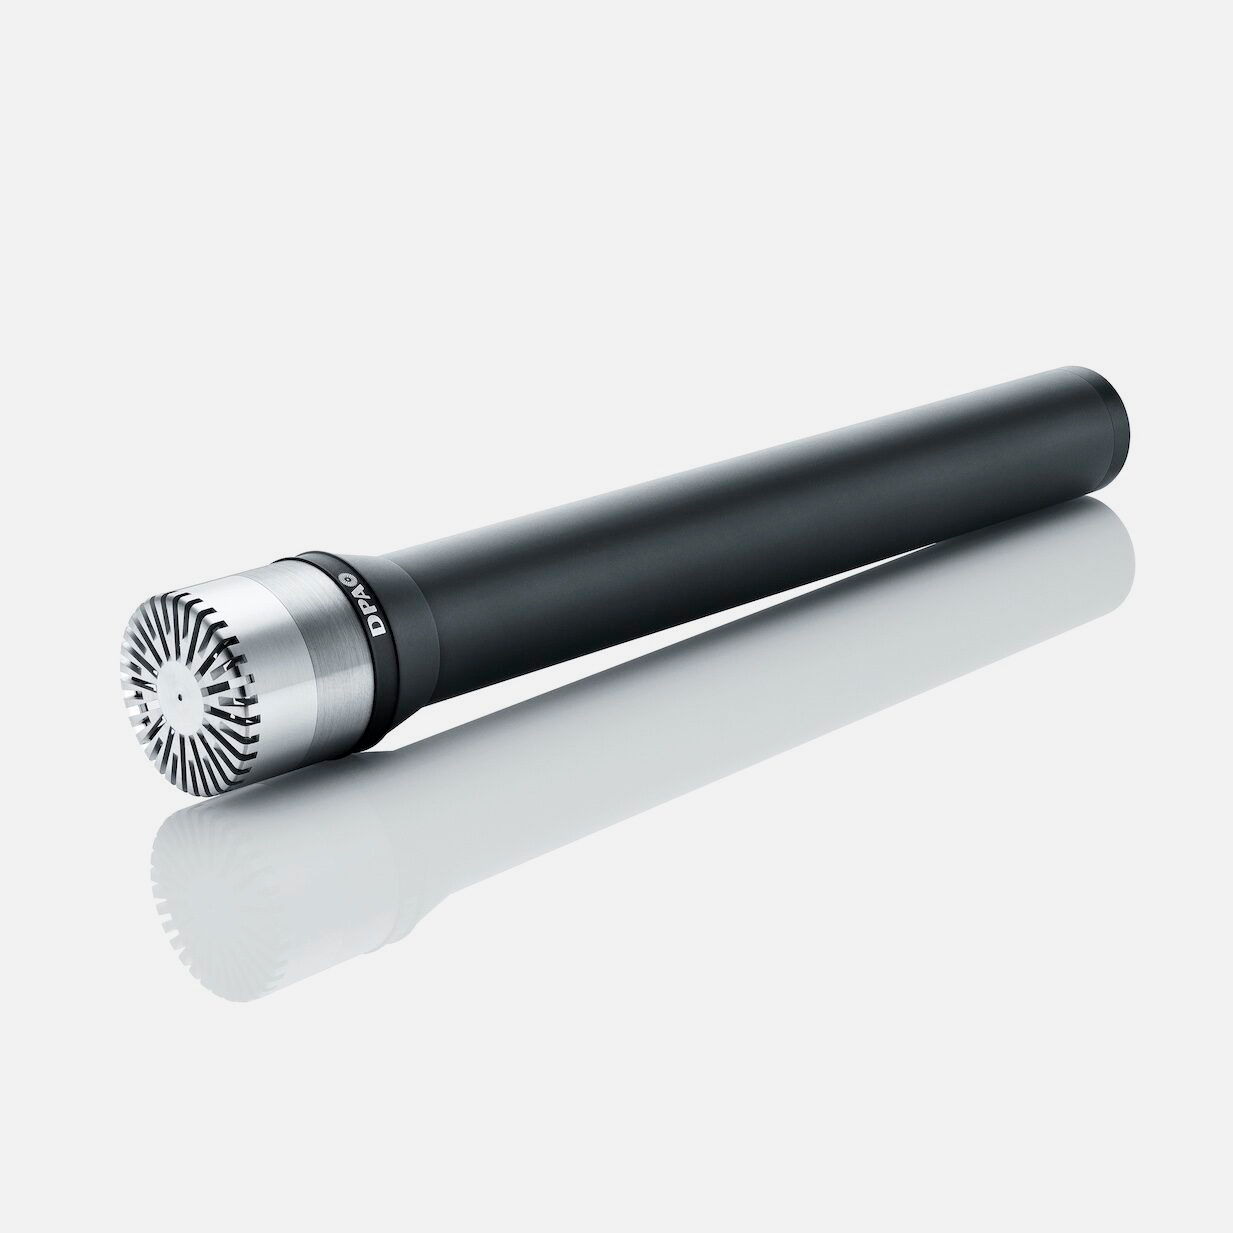 DPA 4041-SP Omni Pencil Microphone